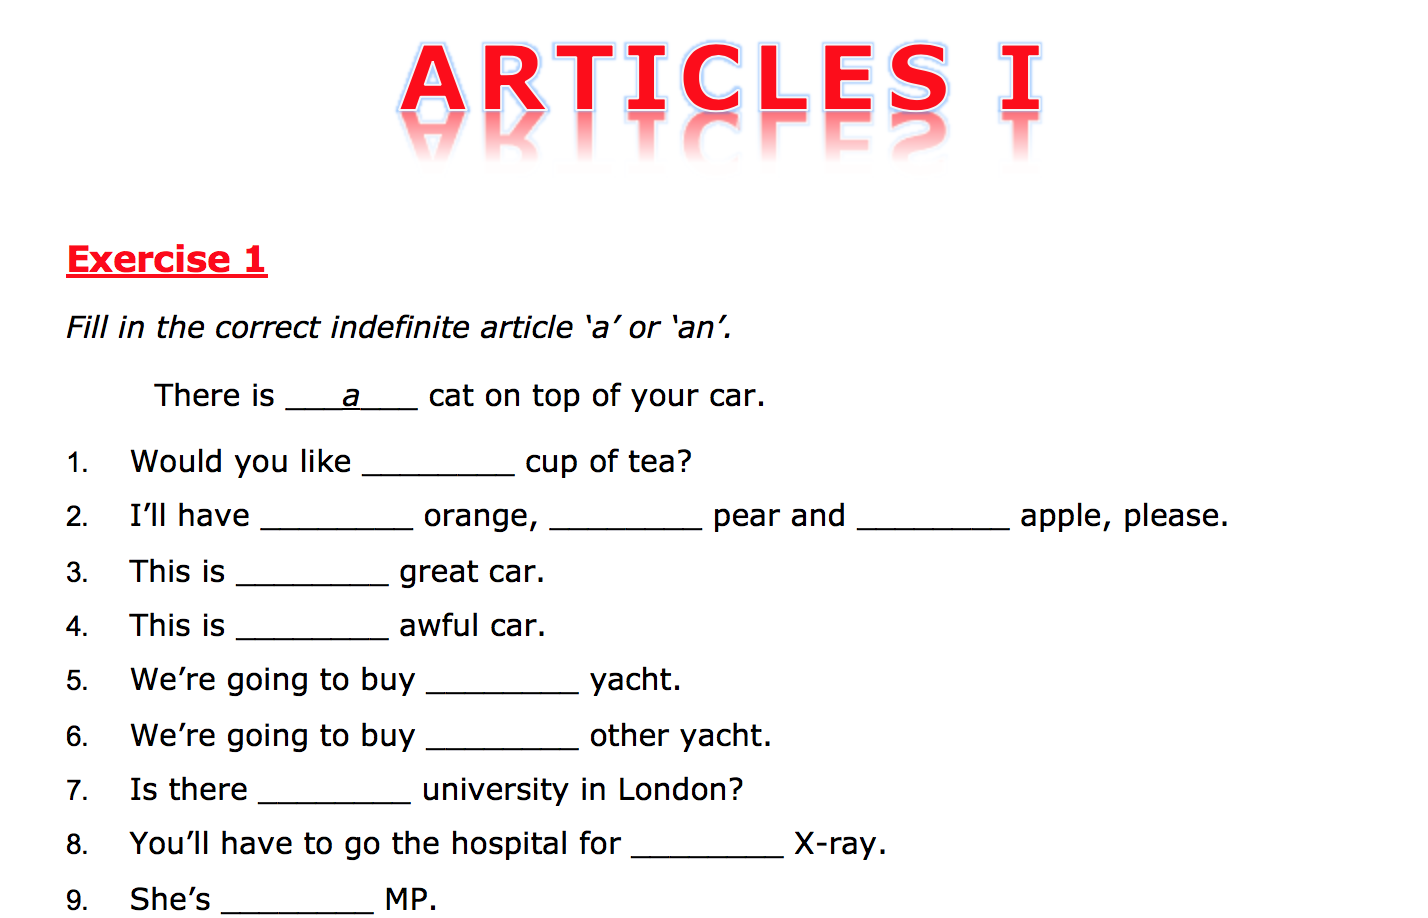 Теста на артикли в английском. Articles упражнения. Задания на артикли. Артикли в английском языке Worksheets. Артикли Worksheets.